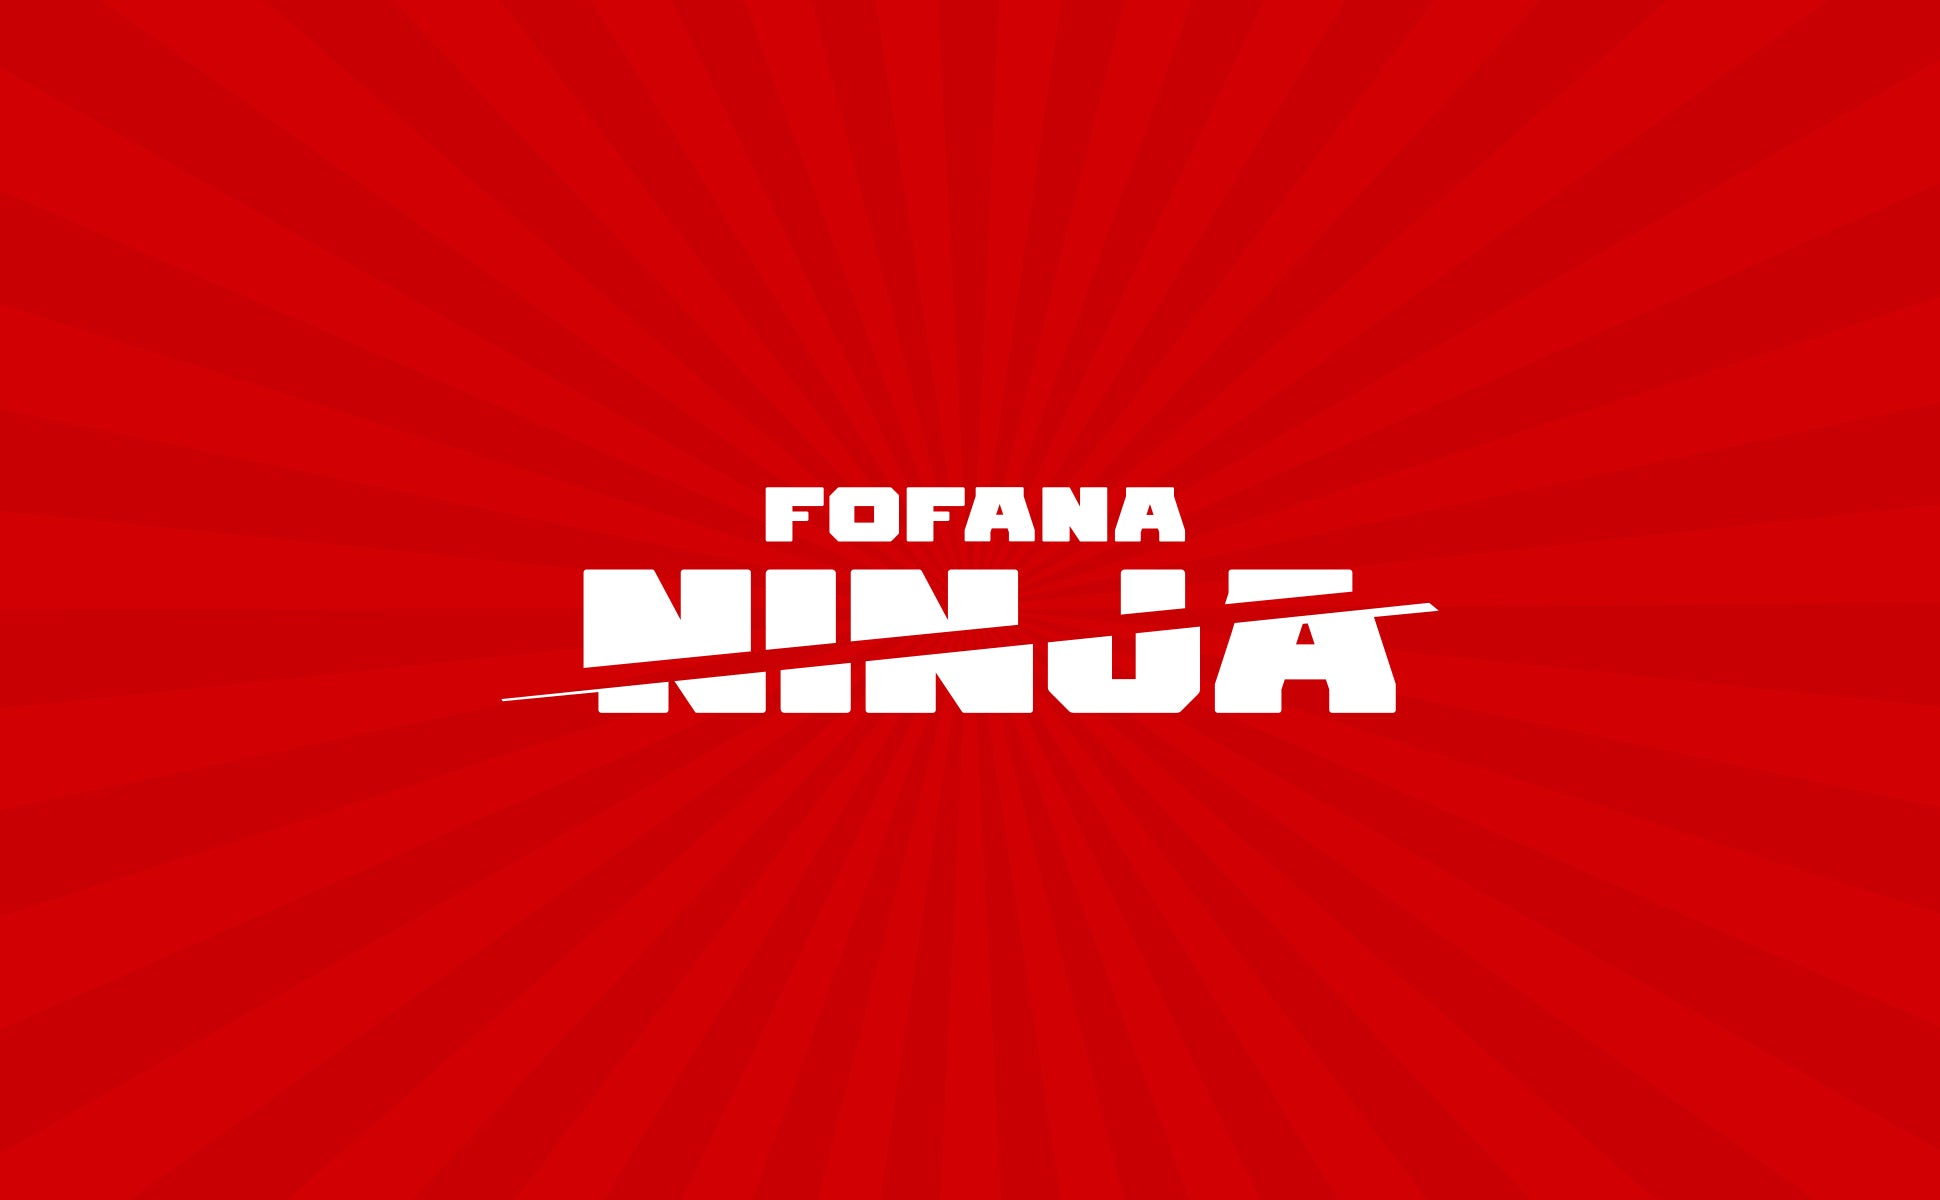 Fofana Homepage section 04